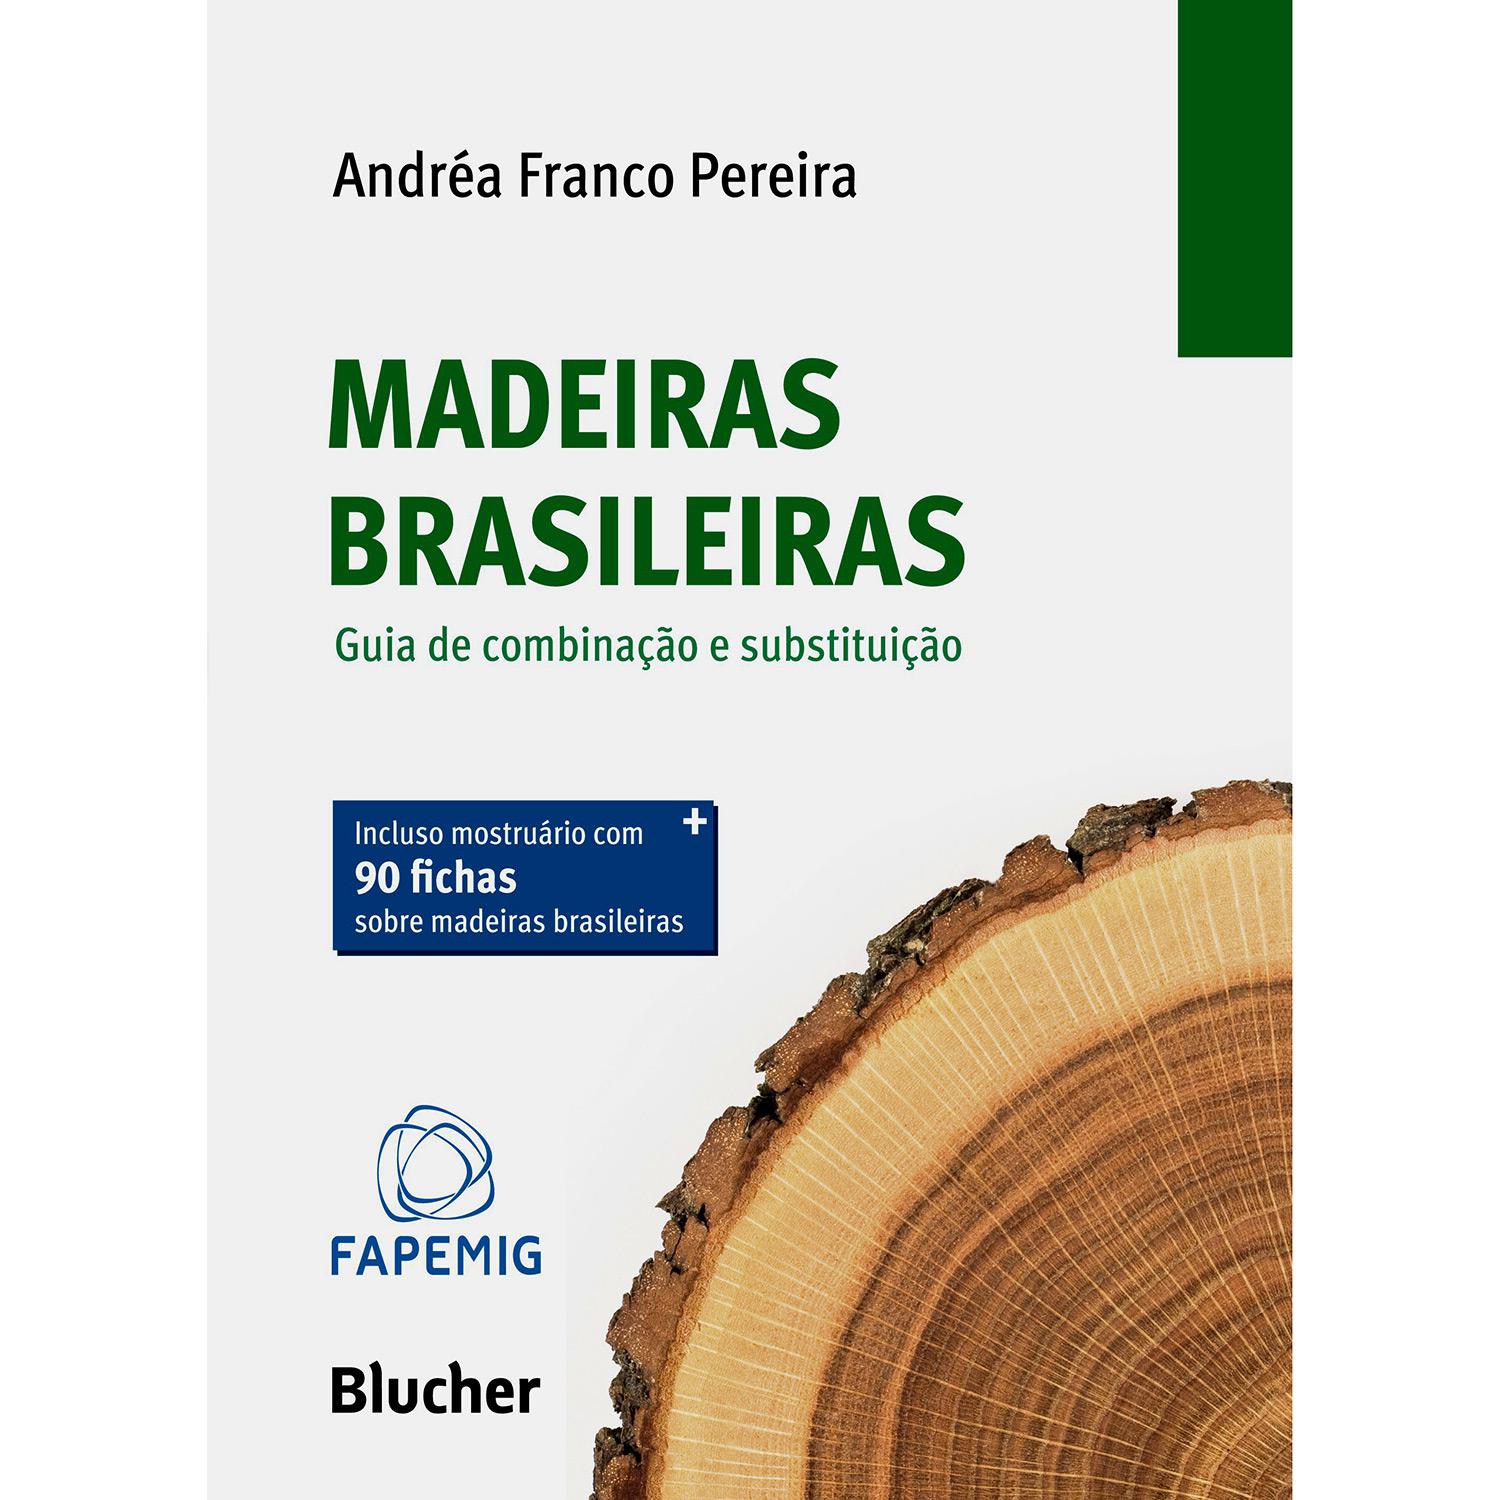 Livro - Madeiras Brasileiras: Guia de Combinação e Substituição é bom? Vale a pena?